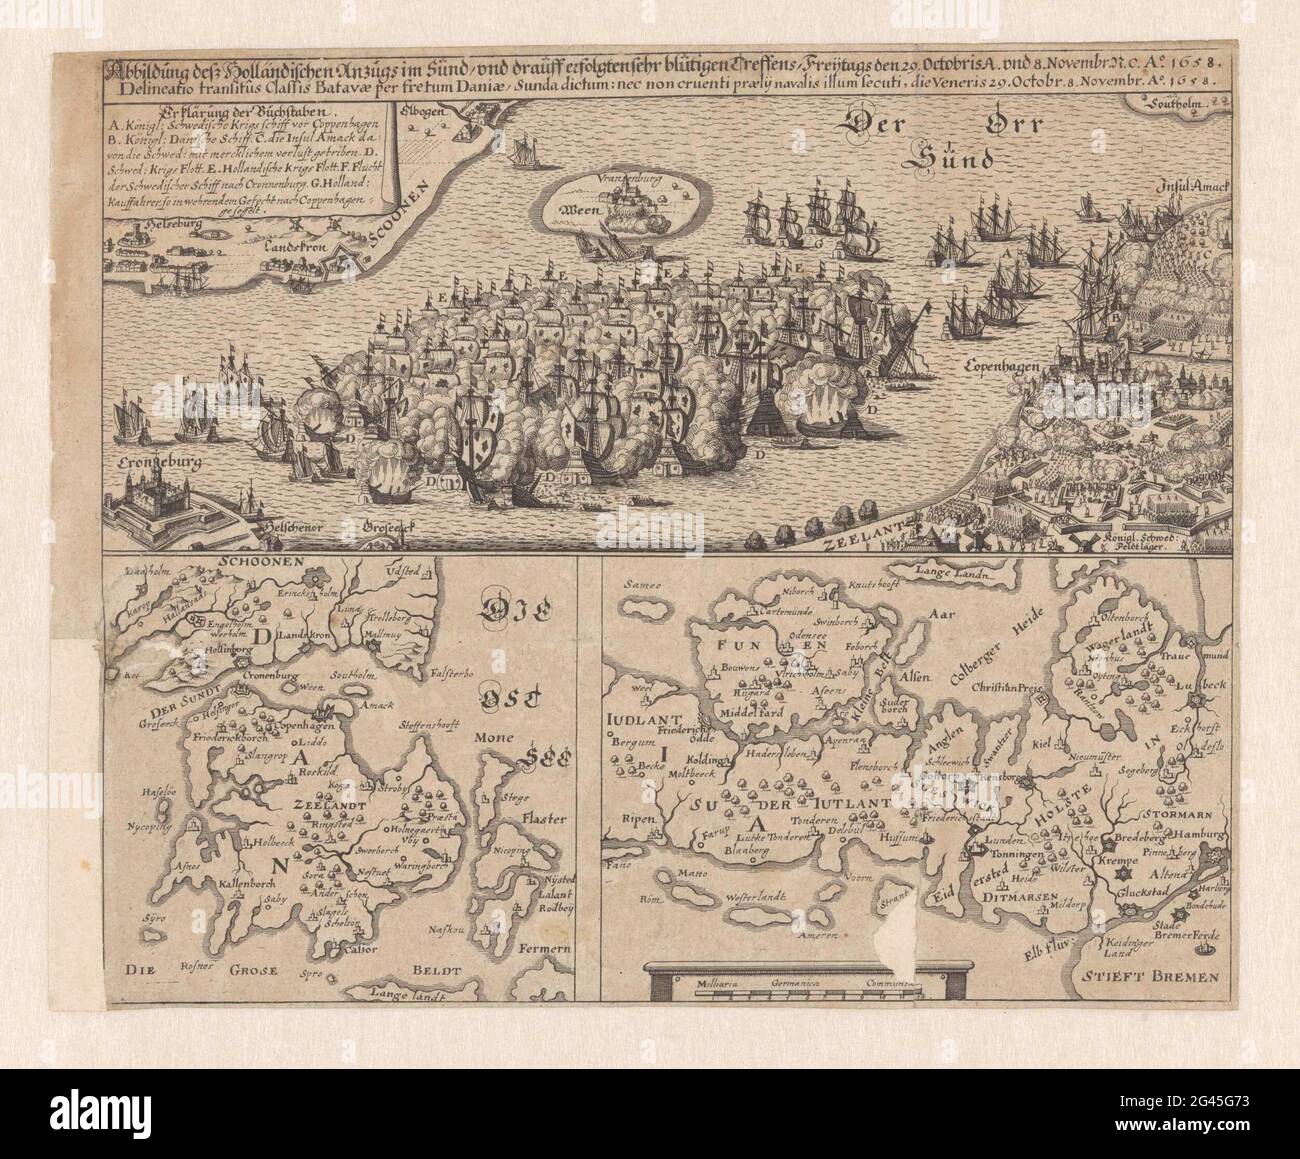 Sea battle in the Sont, 1658; Abbildung Dess Holländischen Anzugs im Sündt  / und Drauff Erolgten Sehr blütigen's pullens, Freijtags den 29. Octobris  A. und 8 Novemberg. ... ao. 1658. Sea battle